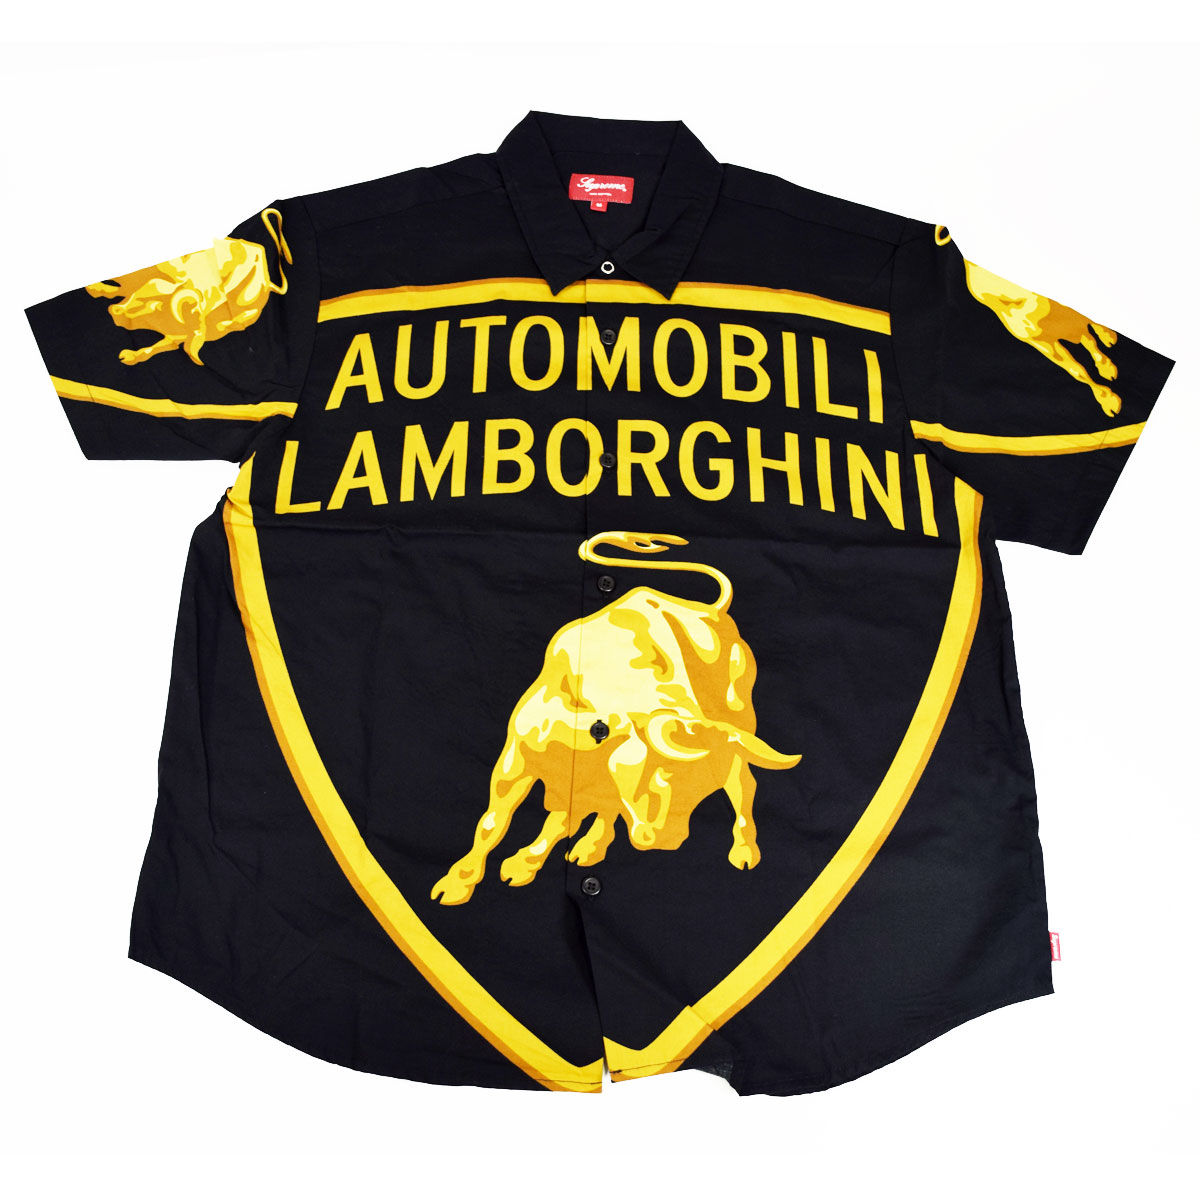 シュプリーム 【新品】2020SS Supreme シュプリーム Automobili Lamborghini S/S Shirt ランボルギーニ シャツ ミディアムサイズ 100%コットン【送料無料】 【代引き手数料無料】32280411